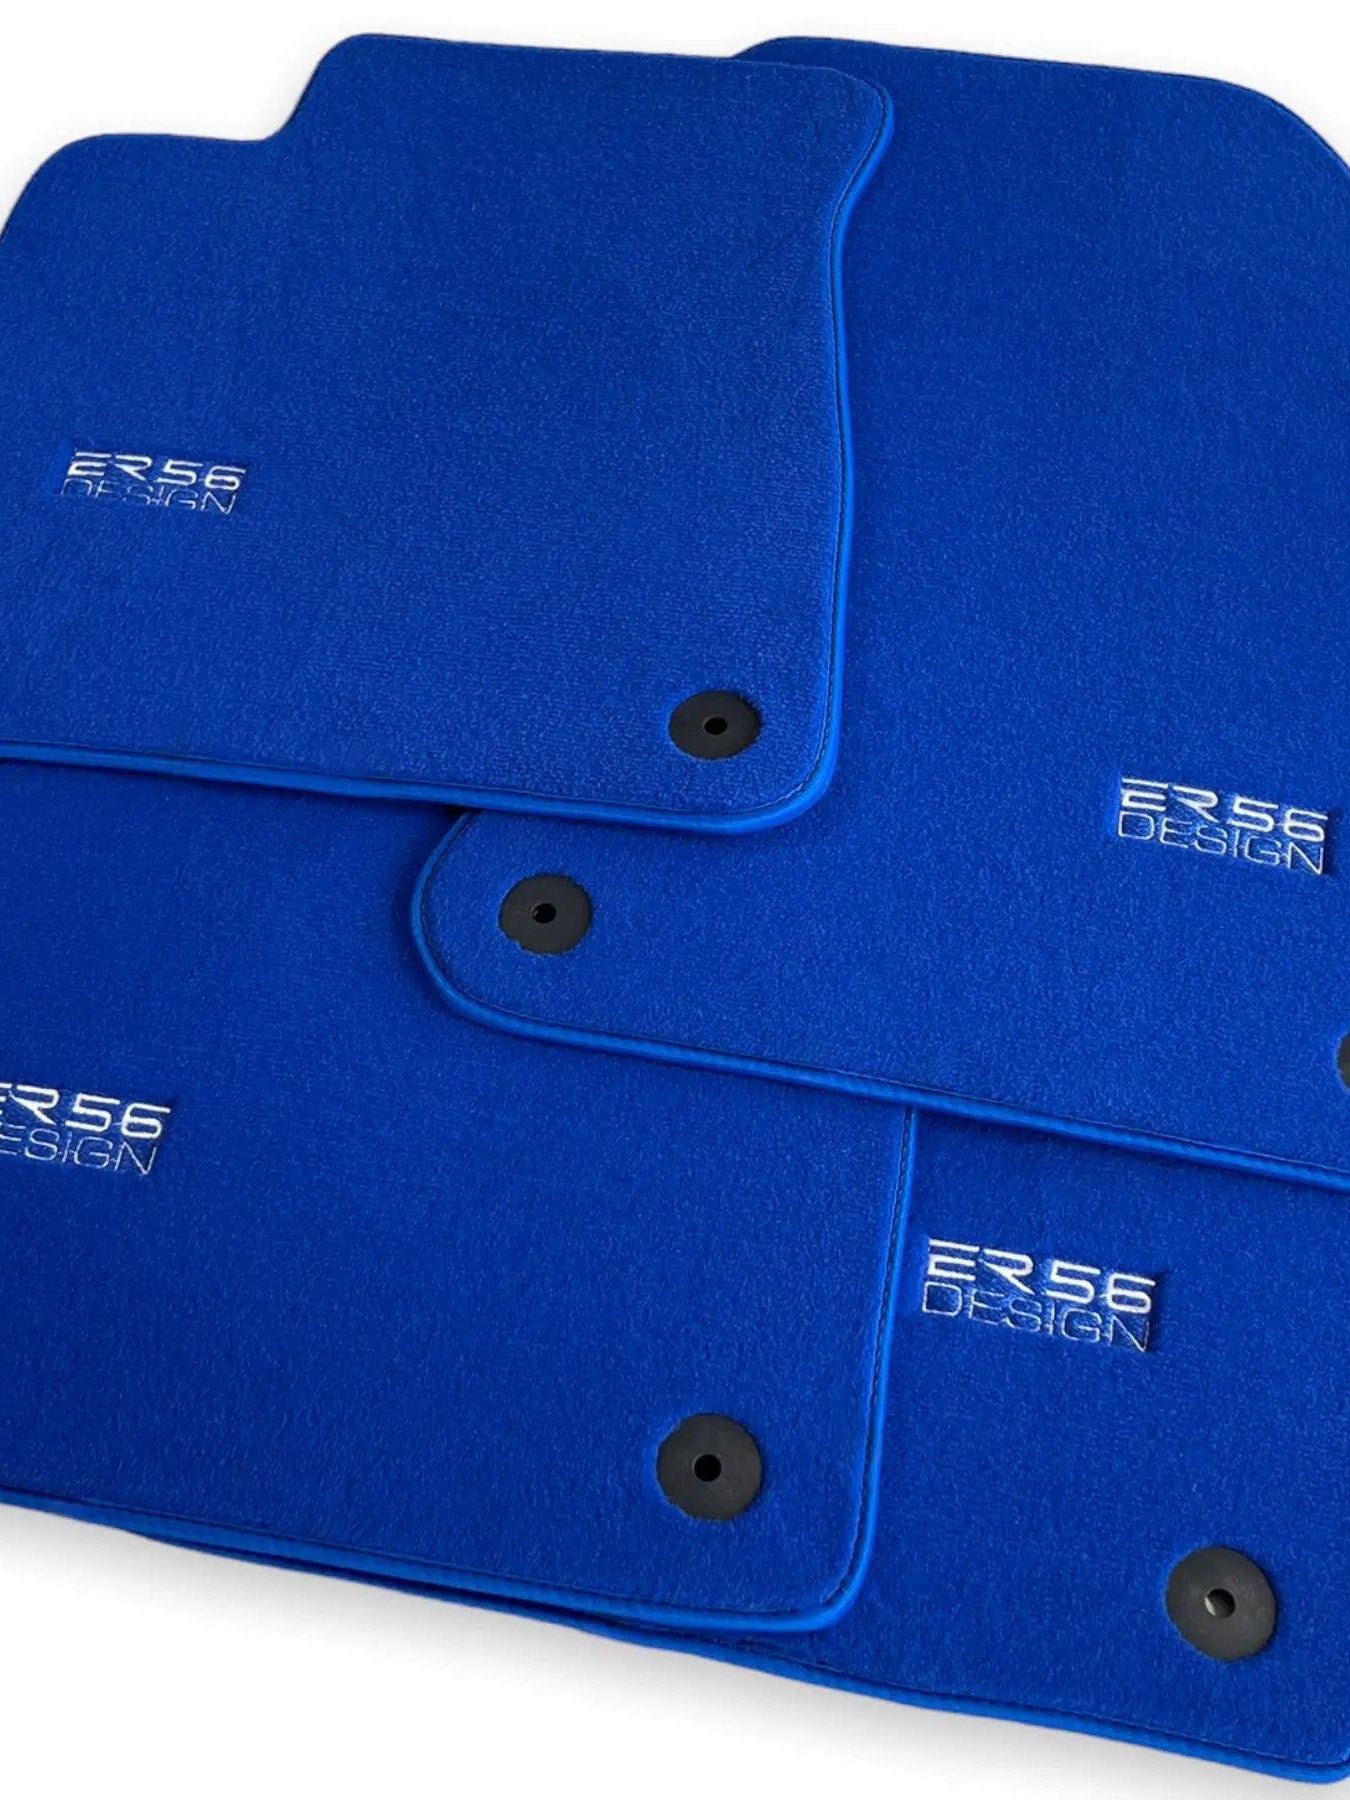 Blue Floor Mats for Audi Q7 4M (2019-2023) | ER56 Design